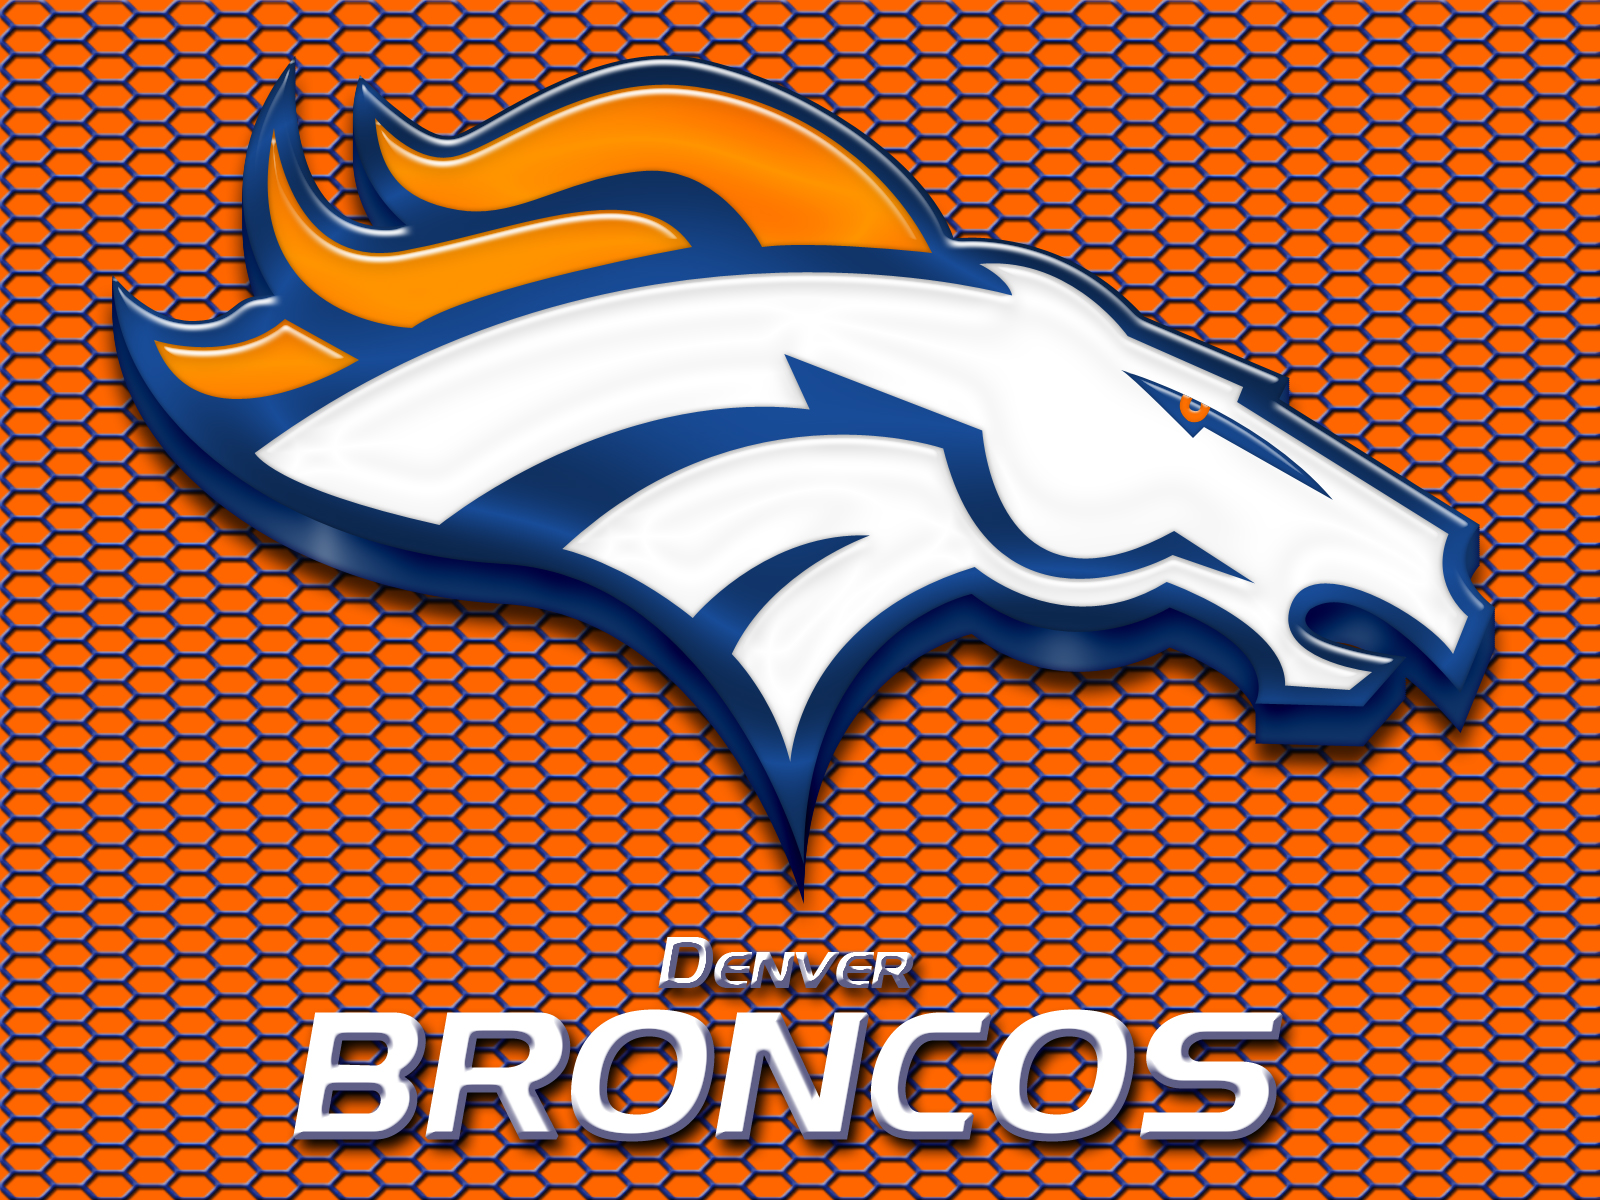 Denver Broncos Background Image Wallpaper